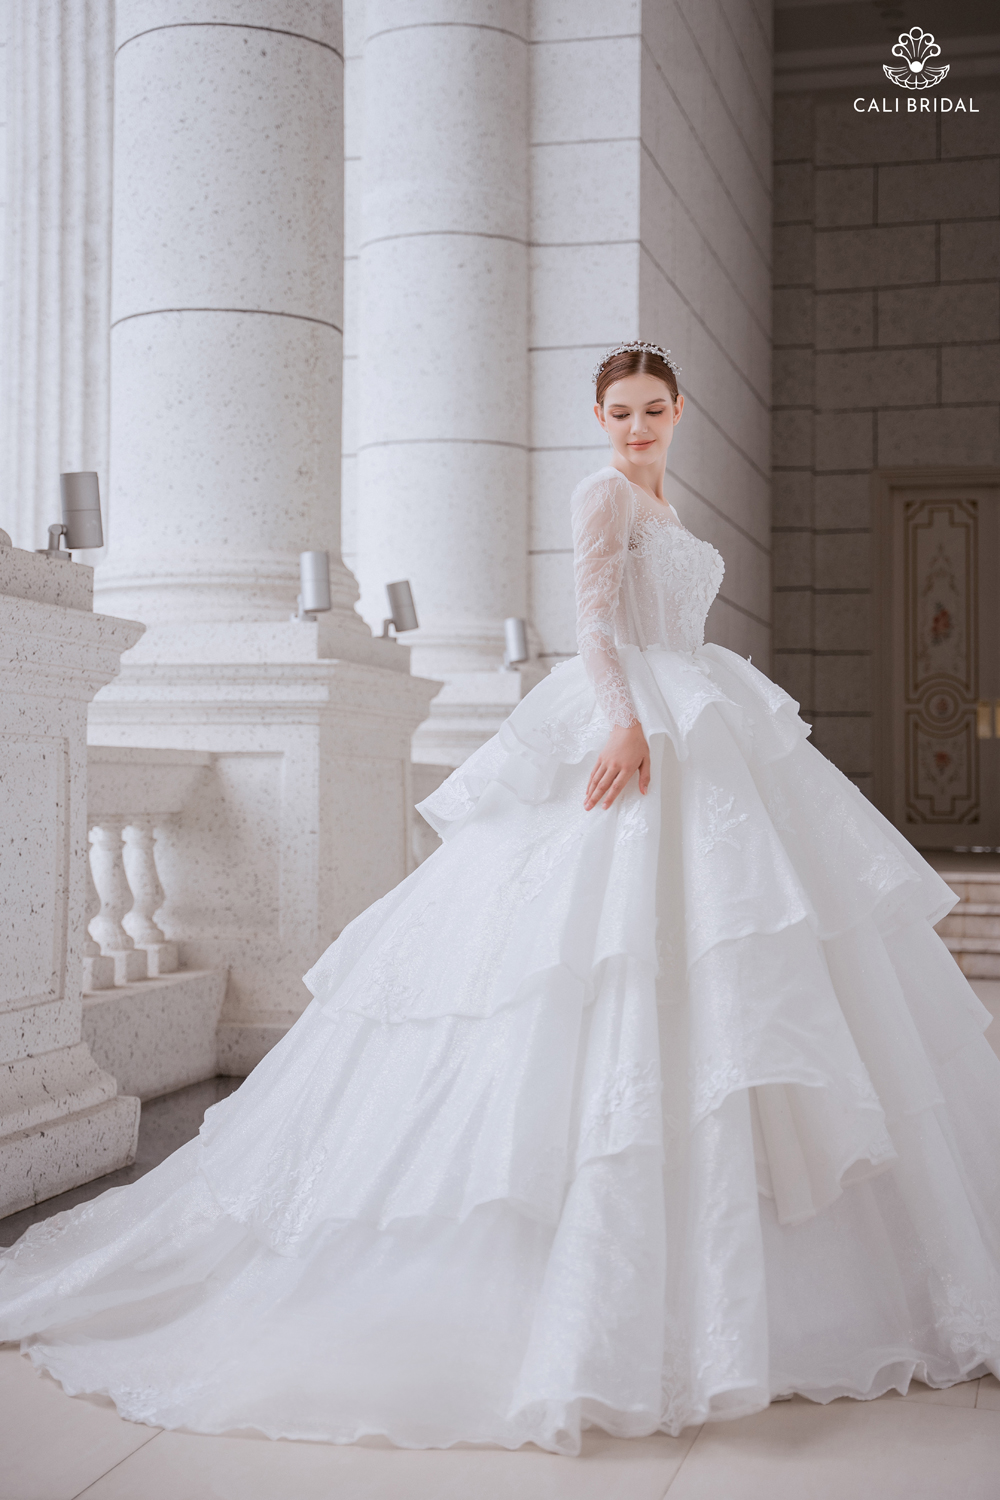 Cali Bridal ra mắt BST “Perfectly Elegant” với hơn 400 mẫu váy cưới độc đáo - 5